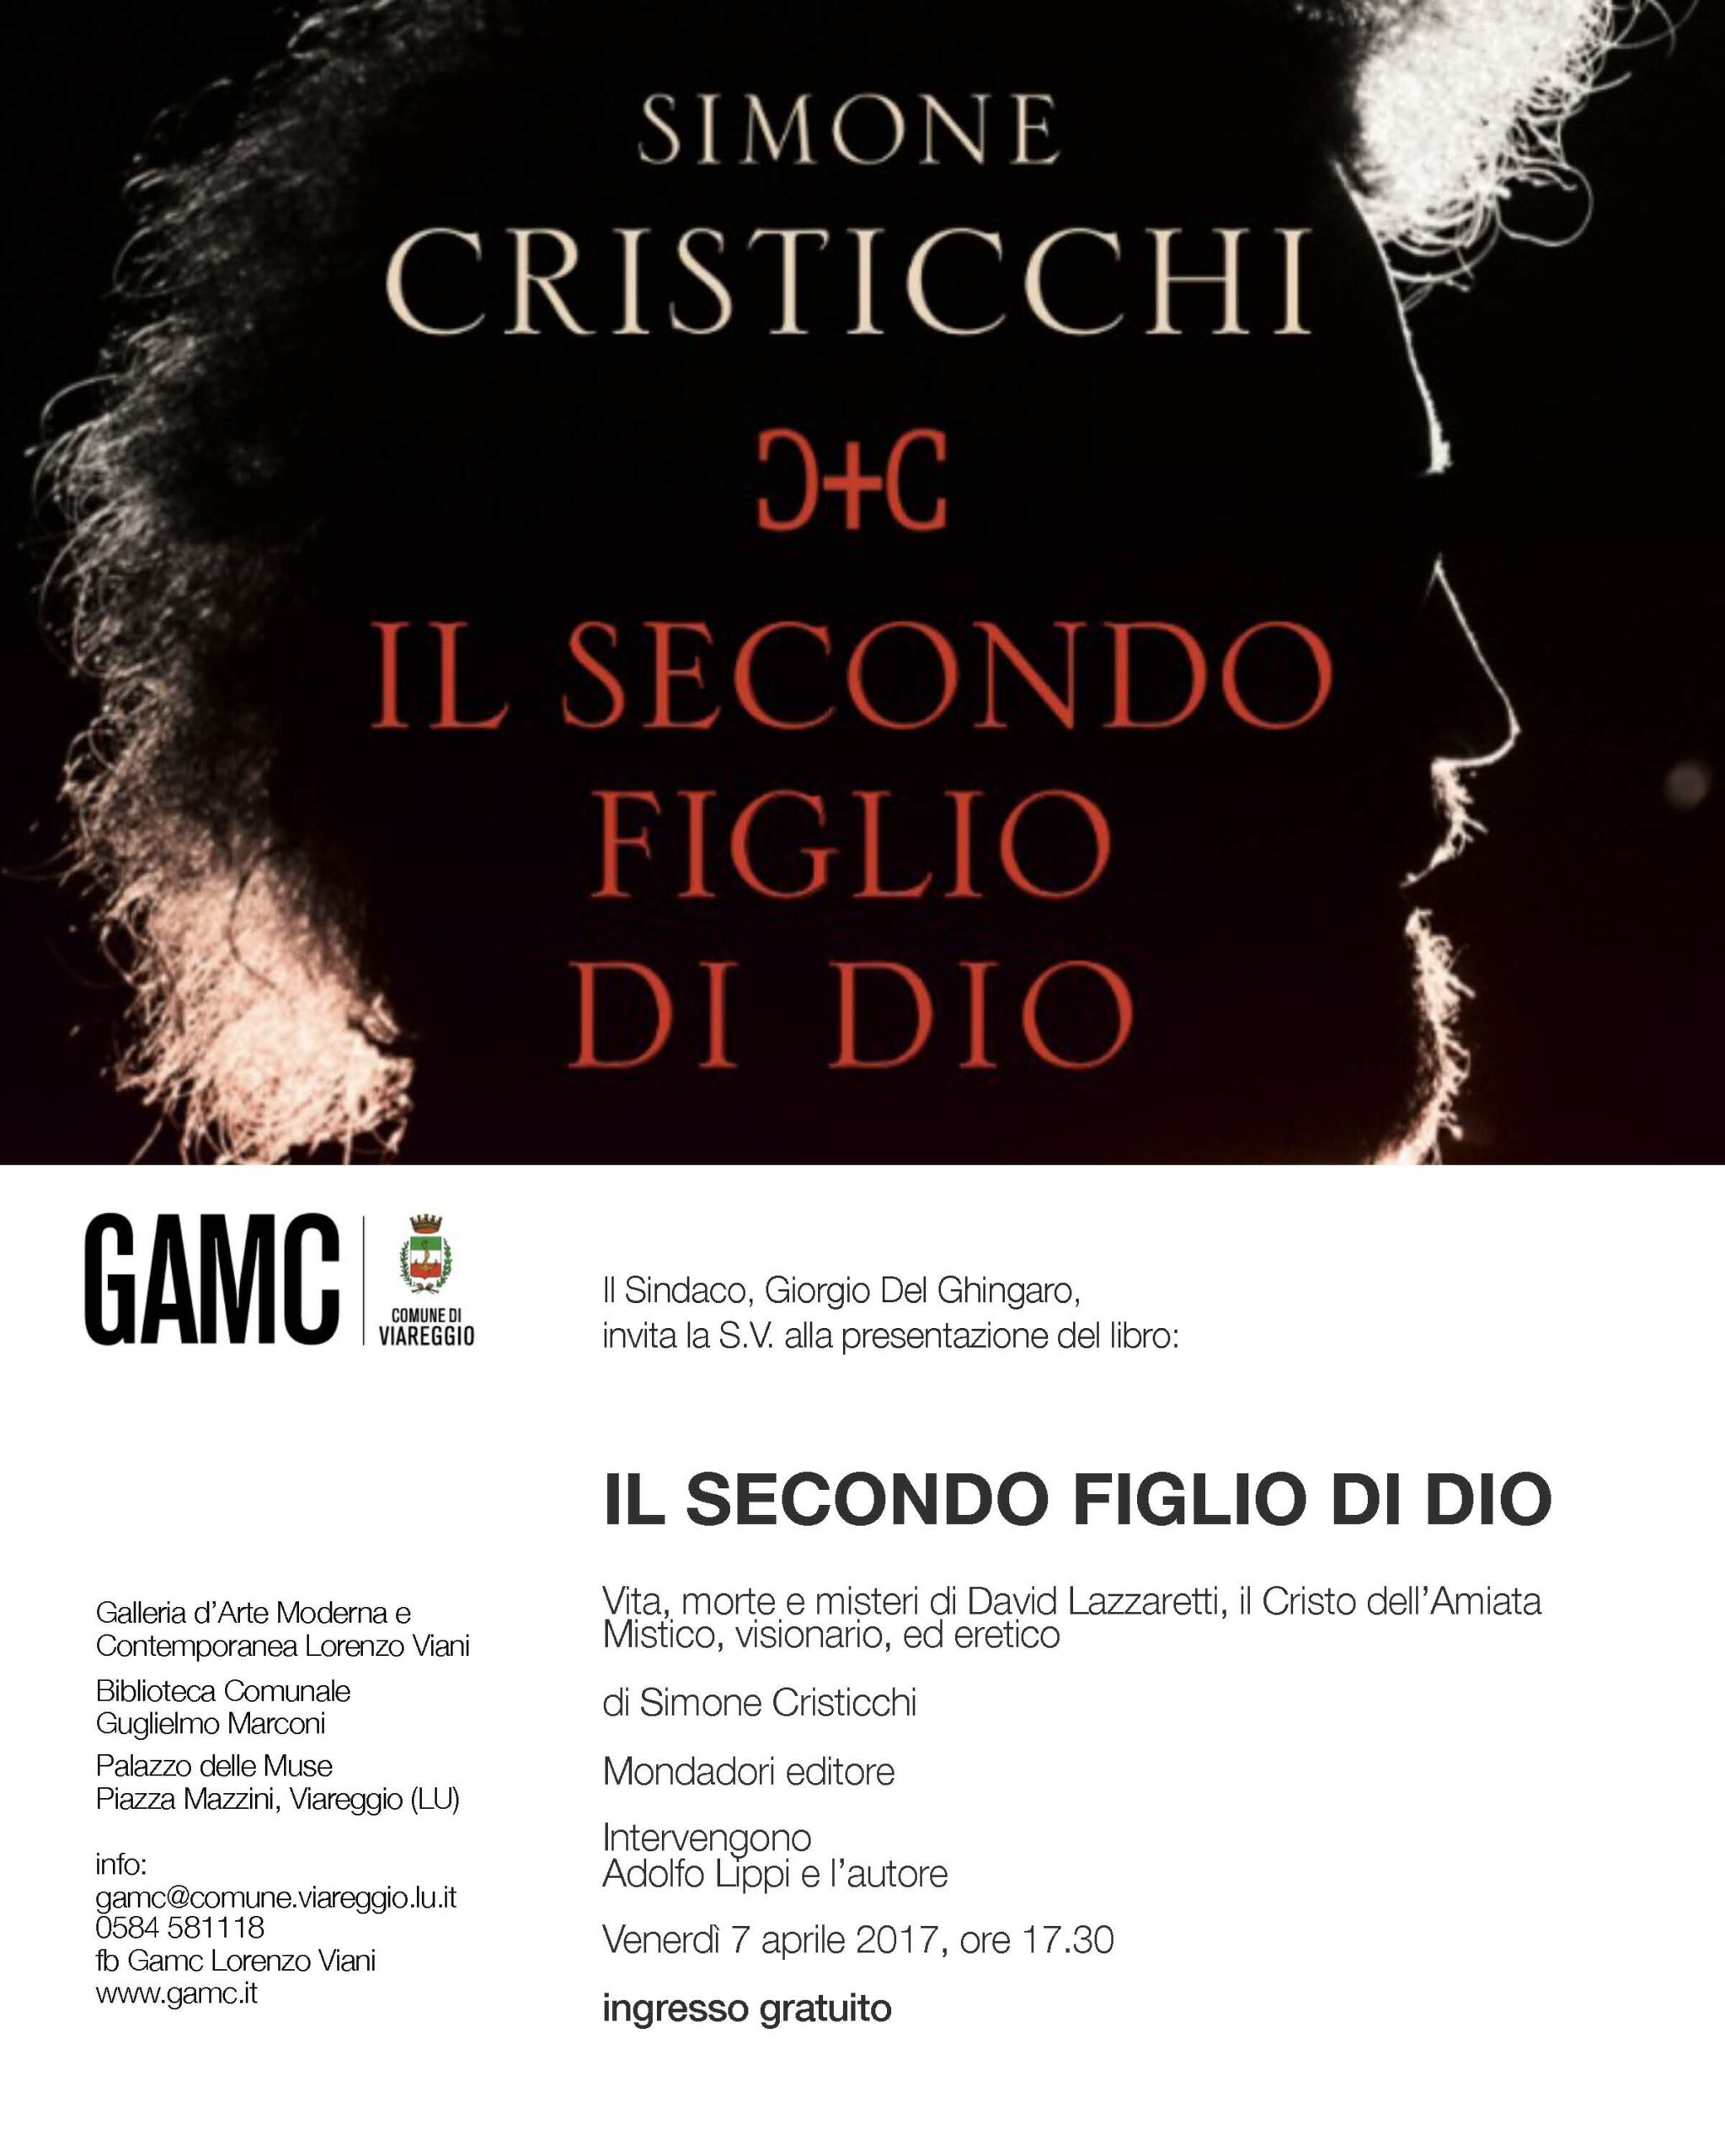 GAMC - Galleria di Arte Moderna - Mostra : IL SECONDO FIGLIO DI DIO di Simone Cristicchi, immagine